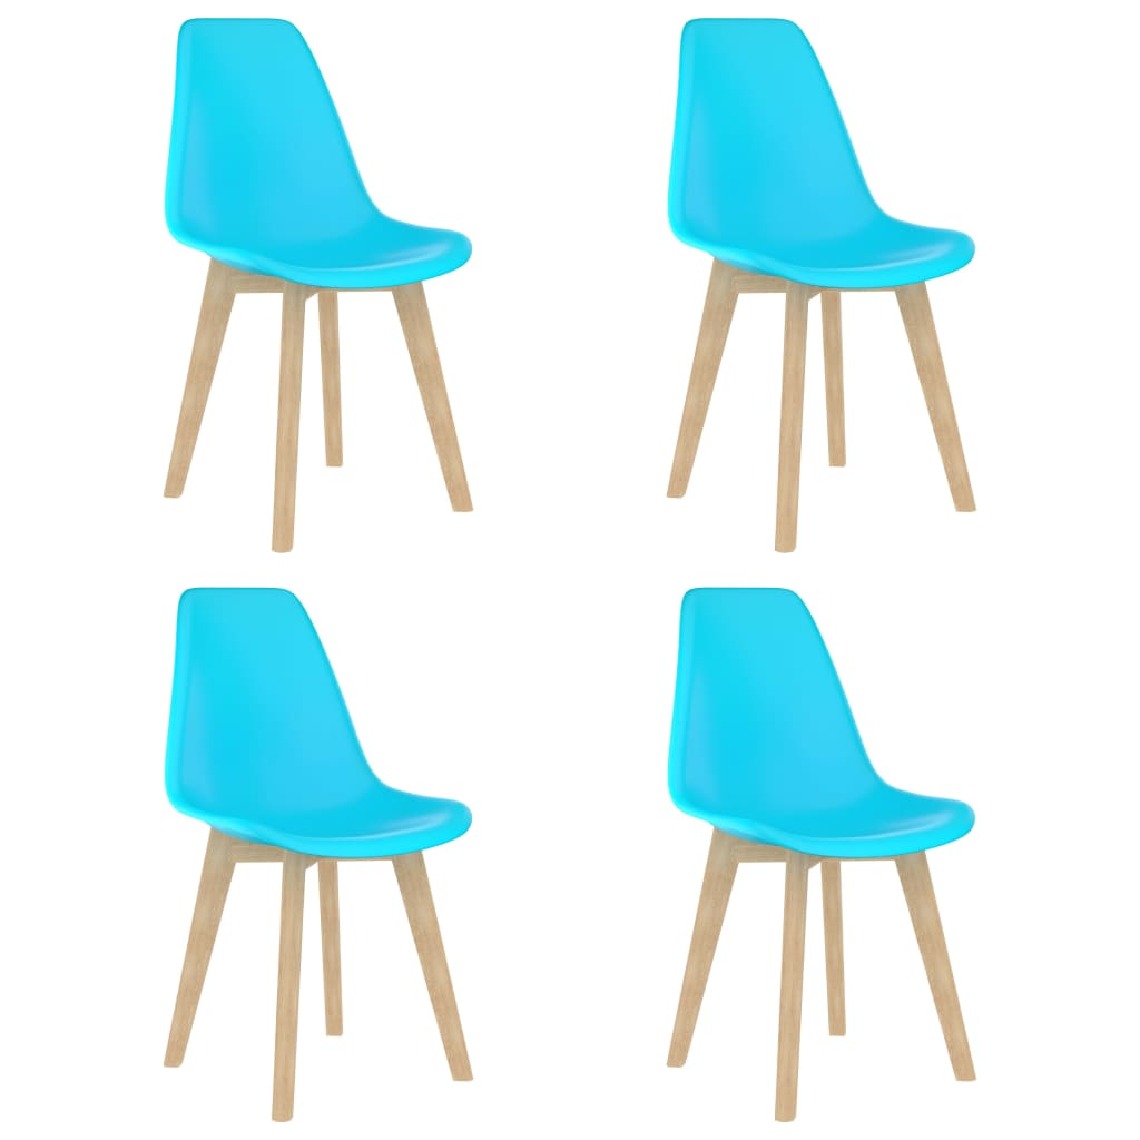 Chunhelife - Chunhelife Chaises de salle à manger 4 pcs Bleu Plastique - Chaises